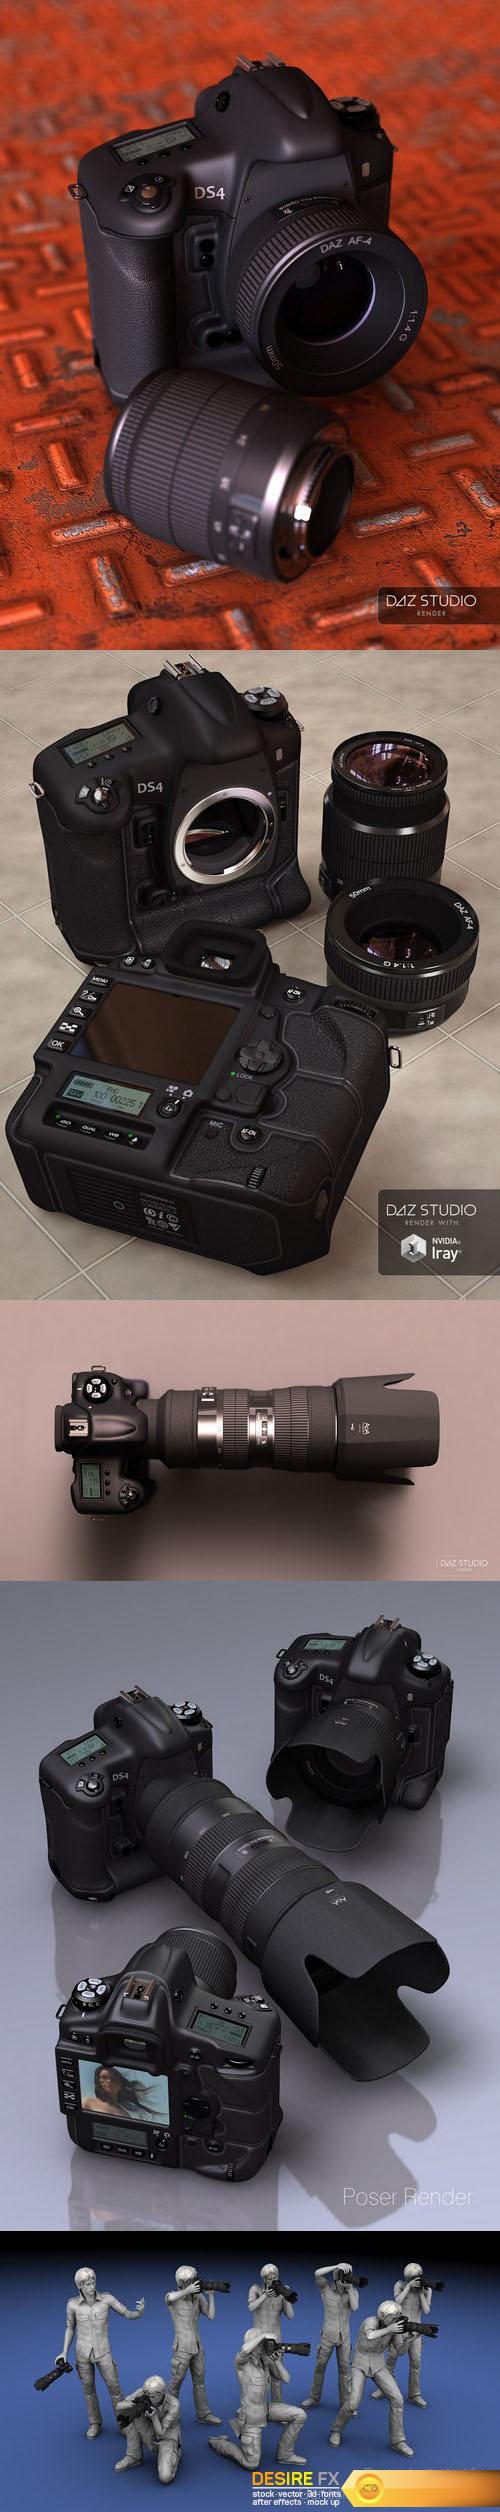 Professional DSLR Camera 3D Model